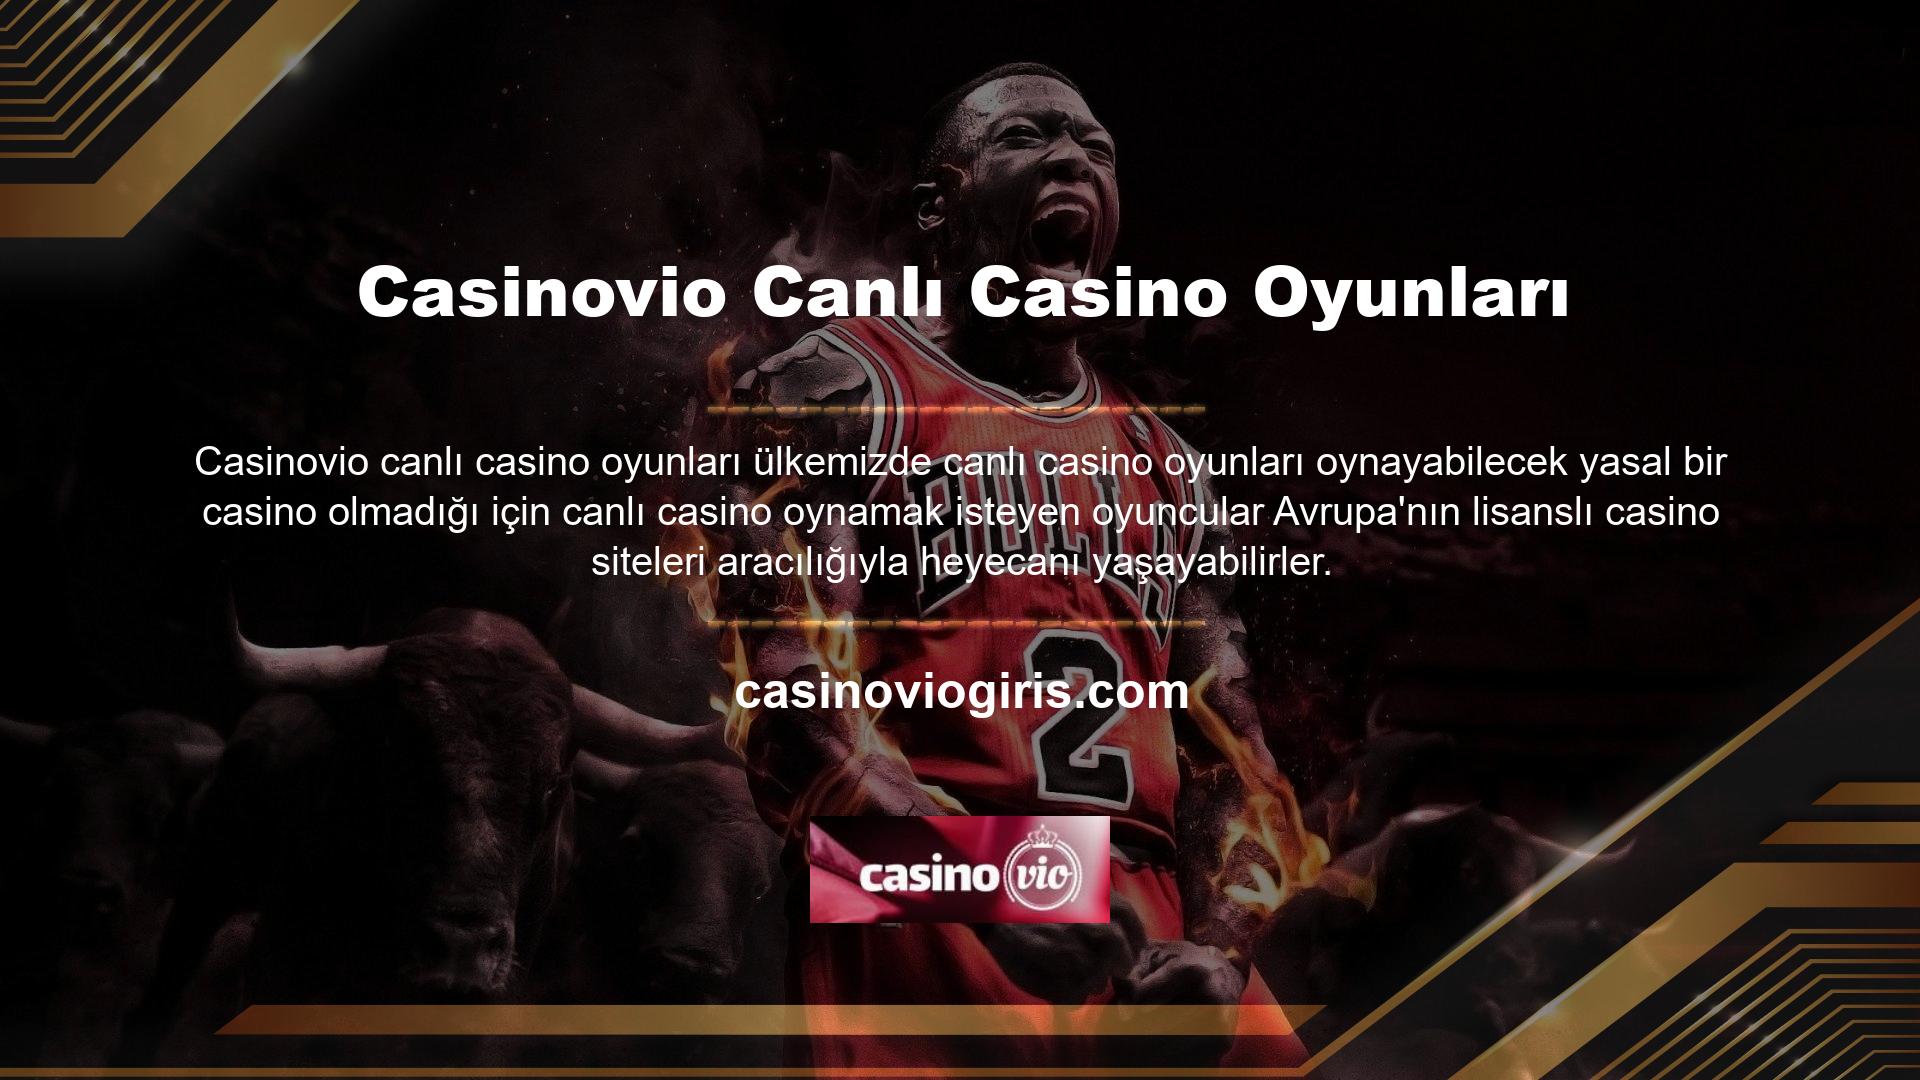 Casinovio web sitesi, oyuncularına canlı bir casino yerine erotik canlı casino oyunları sunmaktadır